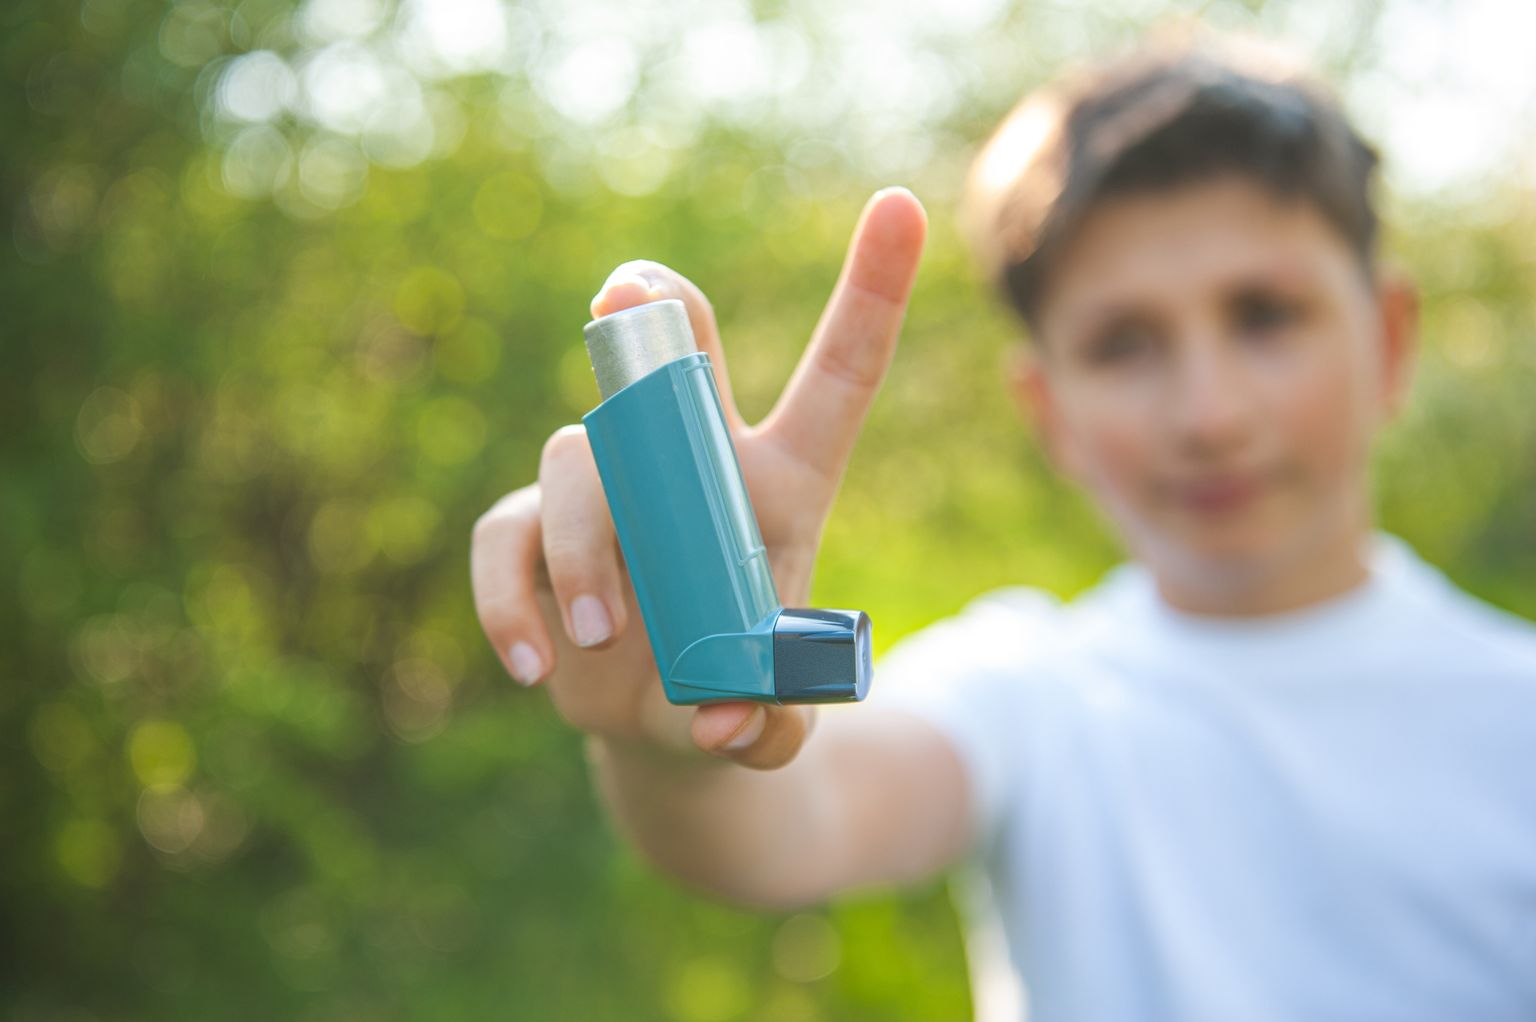 Een jongen in een wit T-shirt houdt een astma-inhalator in de camera. Op de achtergrond is zonnige natuur.